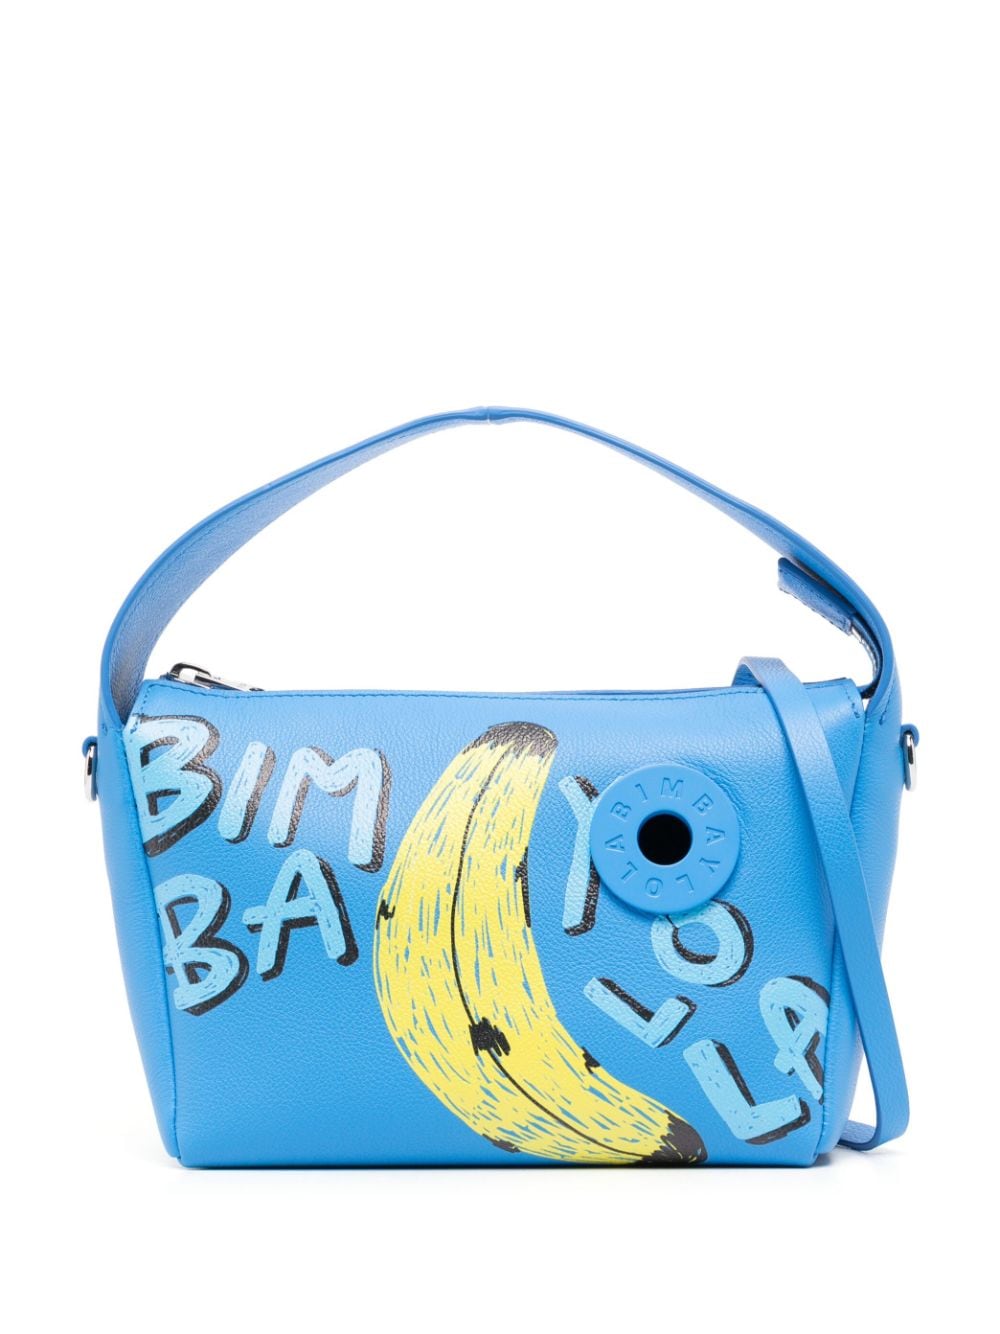 Bimba y Lola small banana-print tote bag, Blue